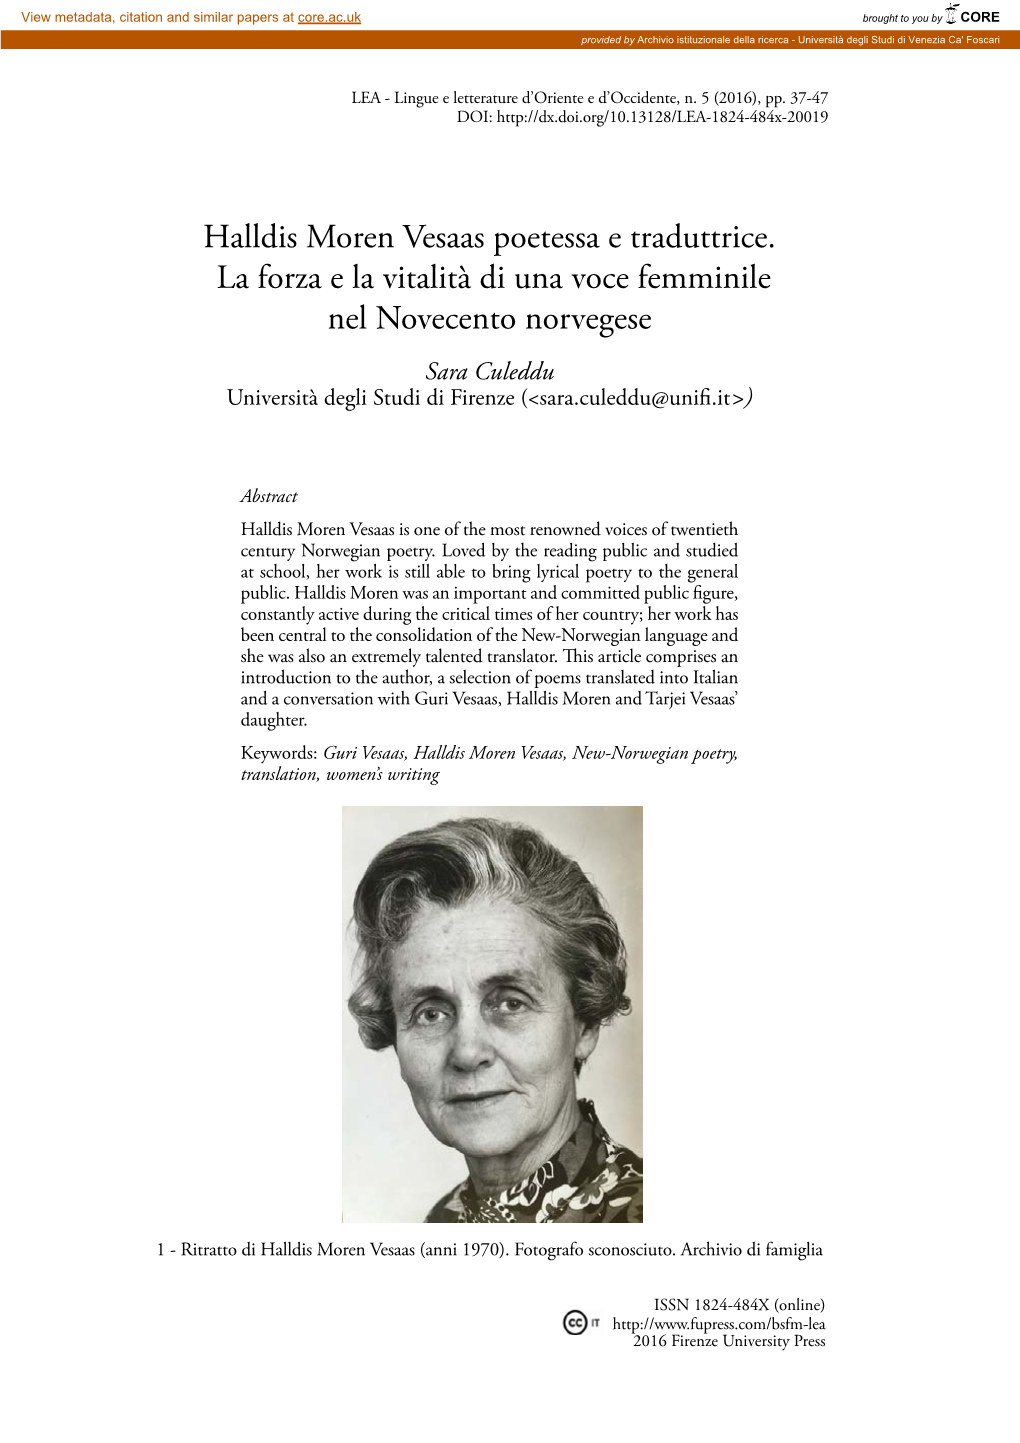 Halldis Moren Vesaas Poetessa E Traduttrice. La Forza E La Vitalità Di